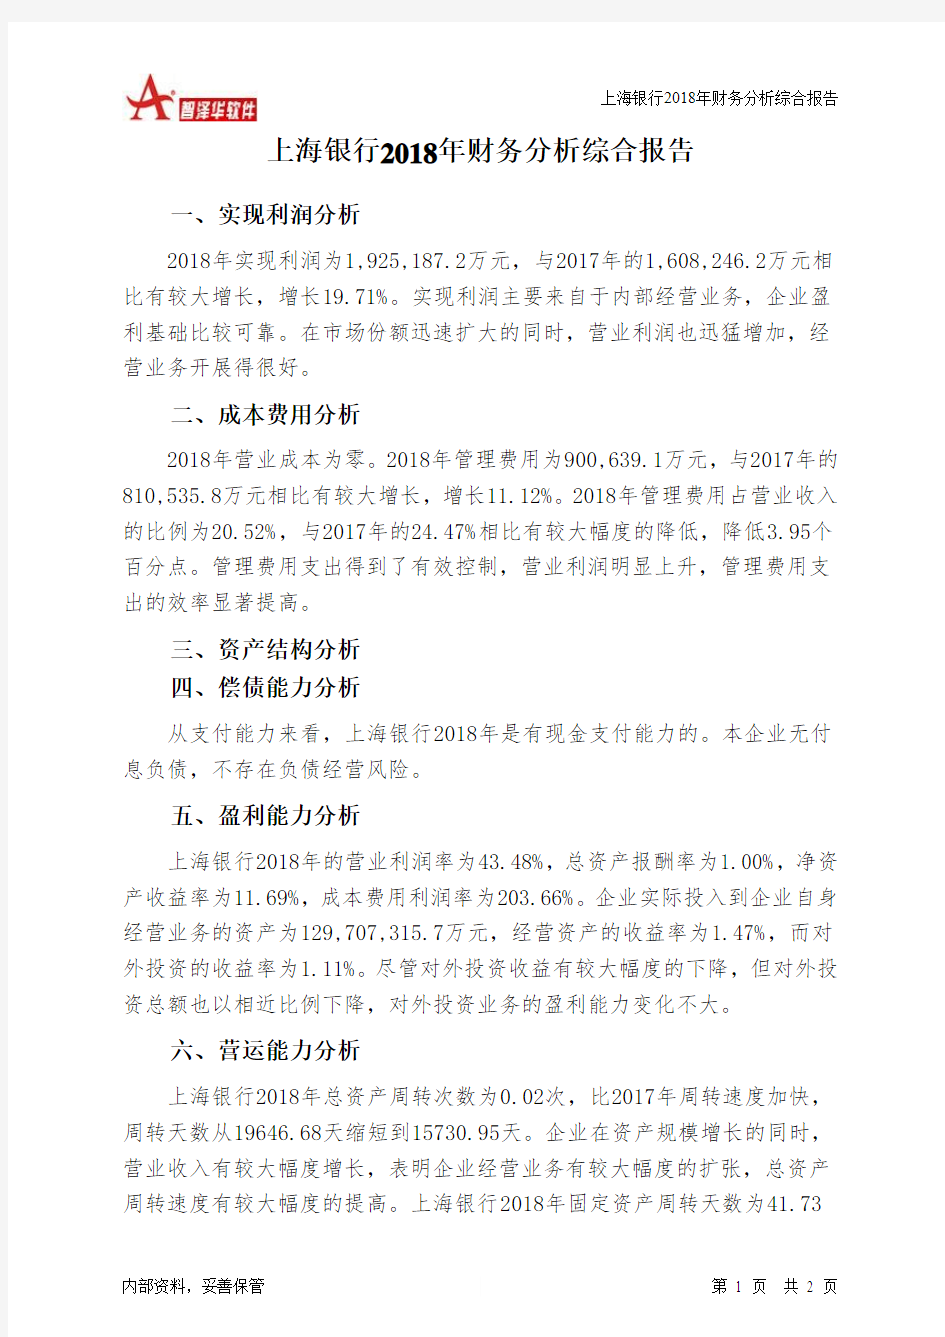 上海银行2018年财务分析结论报告-智泽华